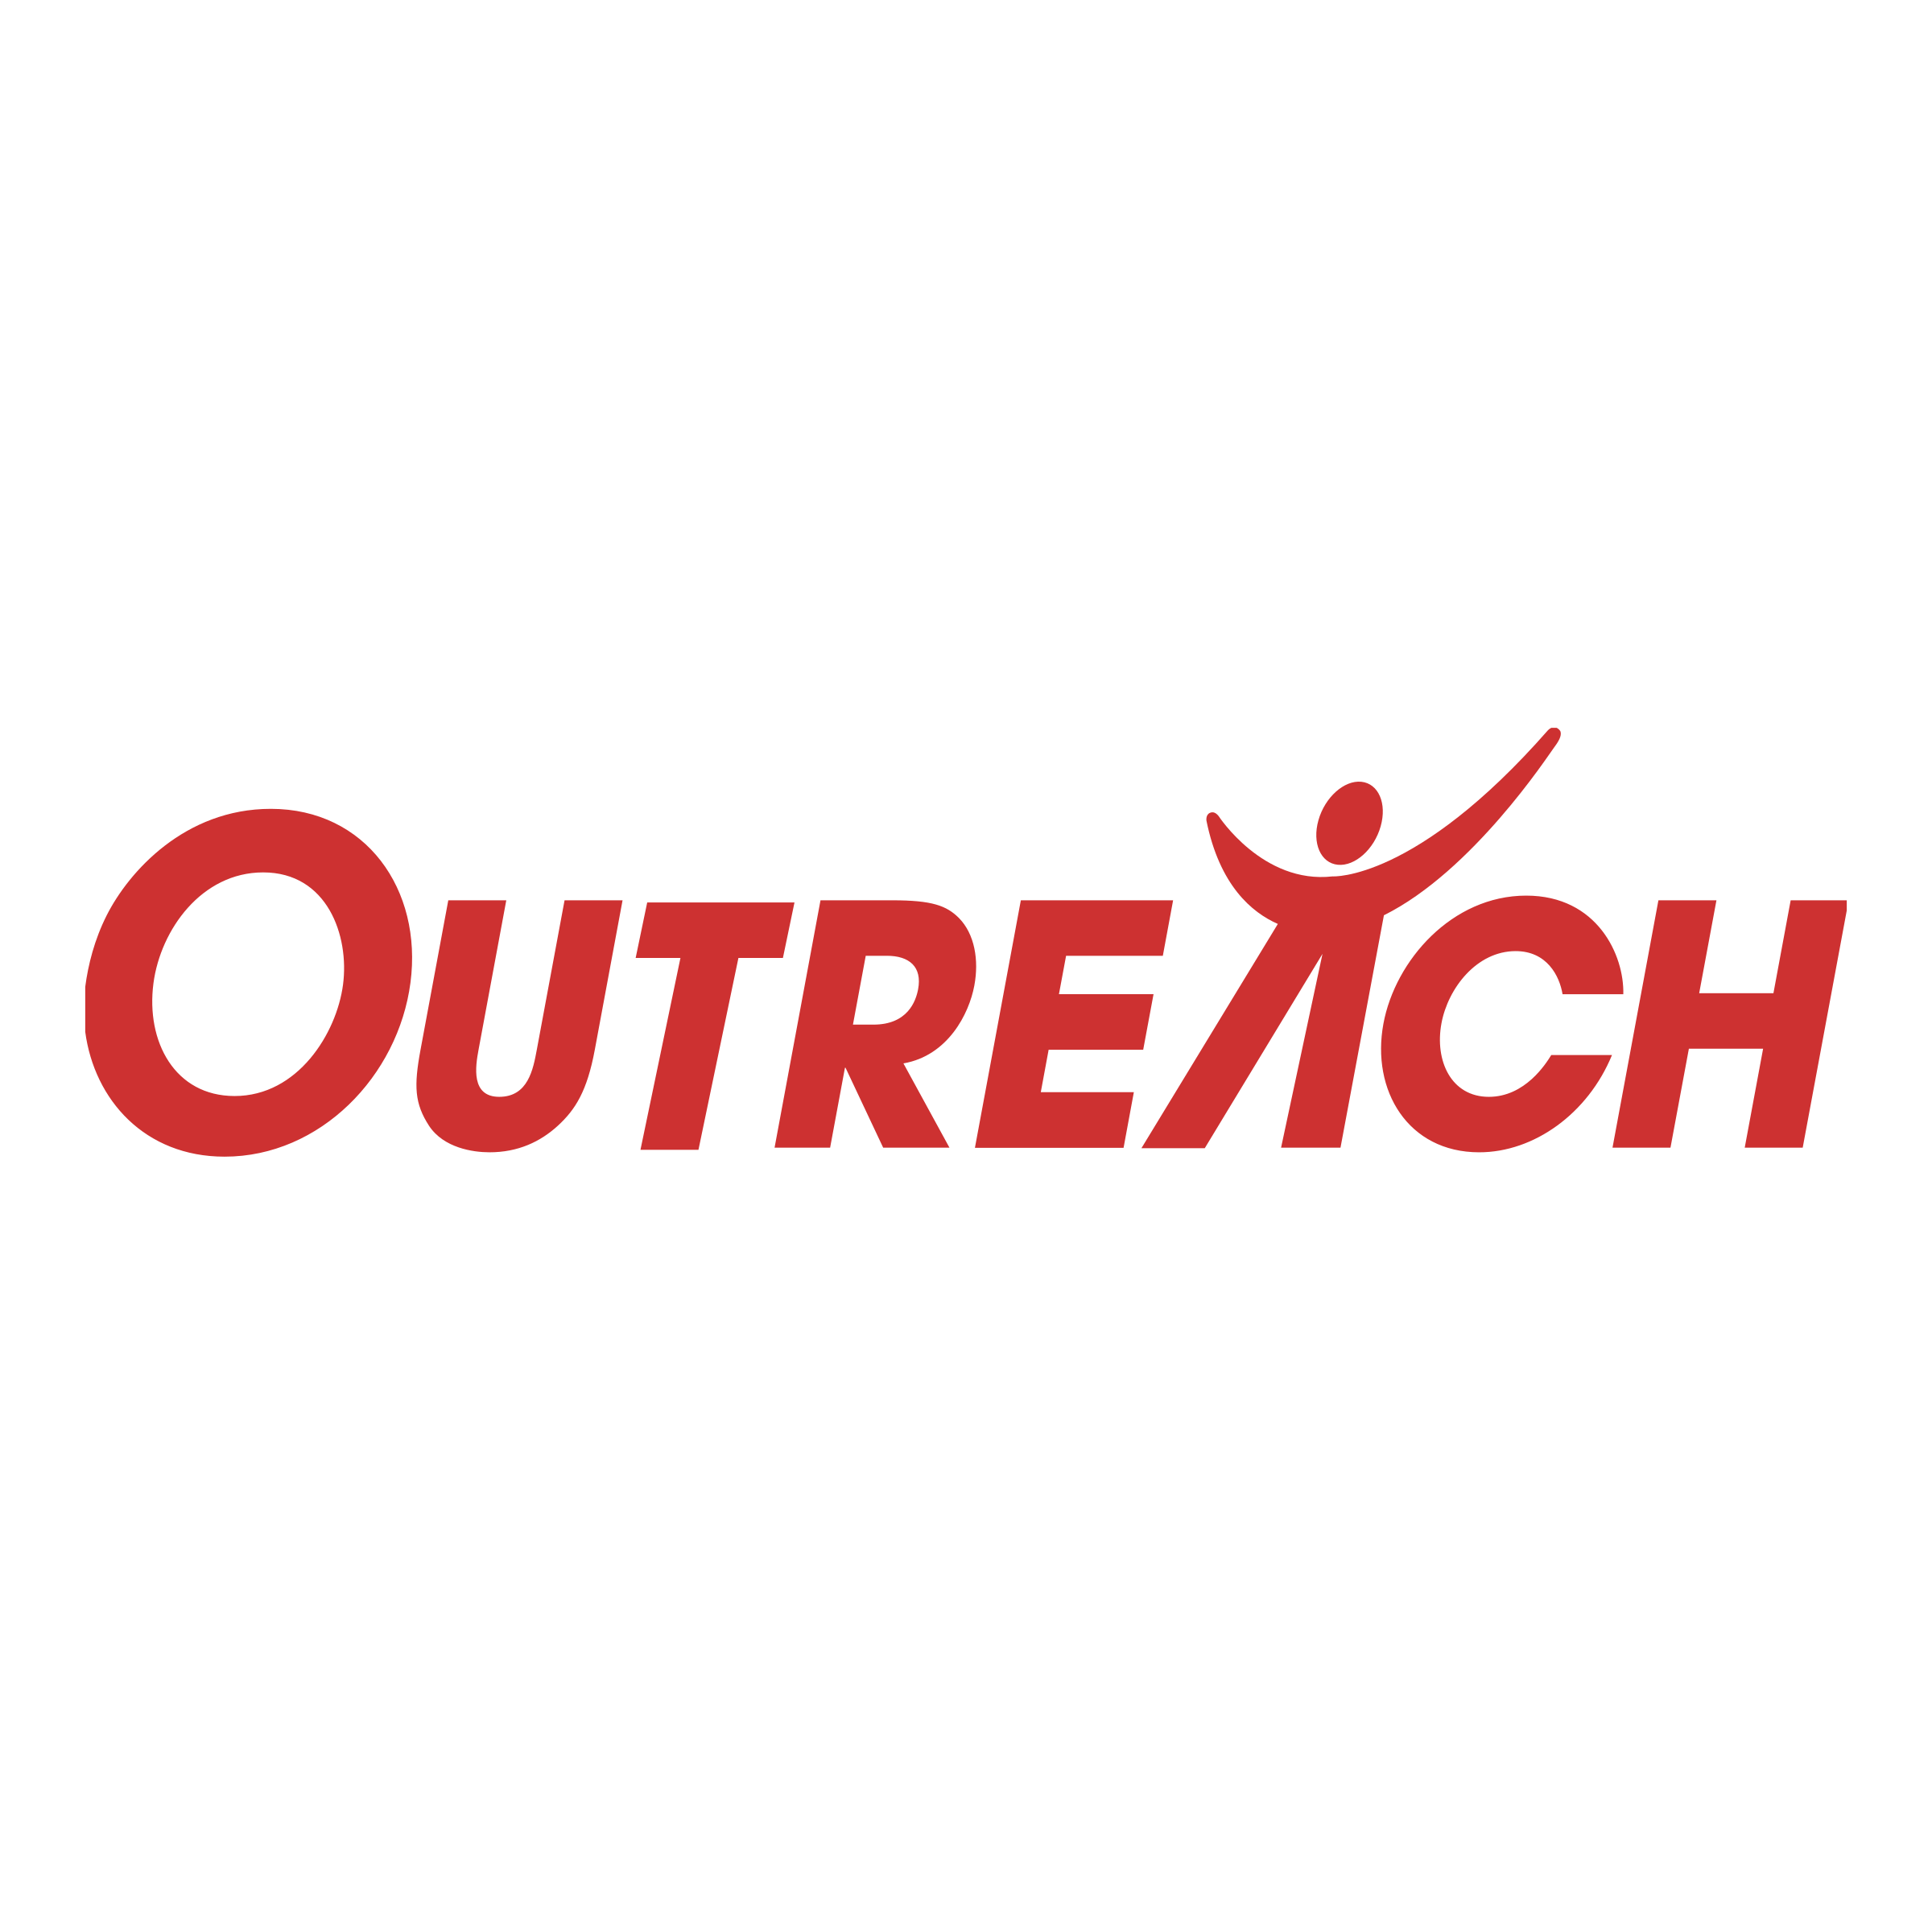 Outreach Logo - Outreach Logo PNG Transparent & SVG Vector